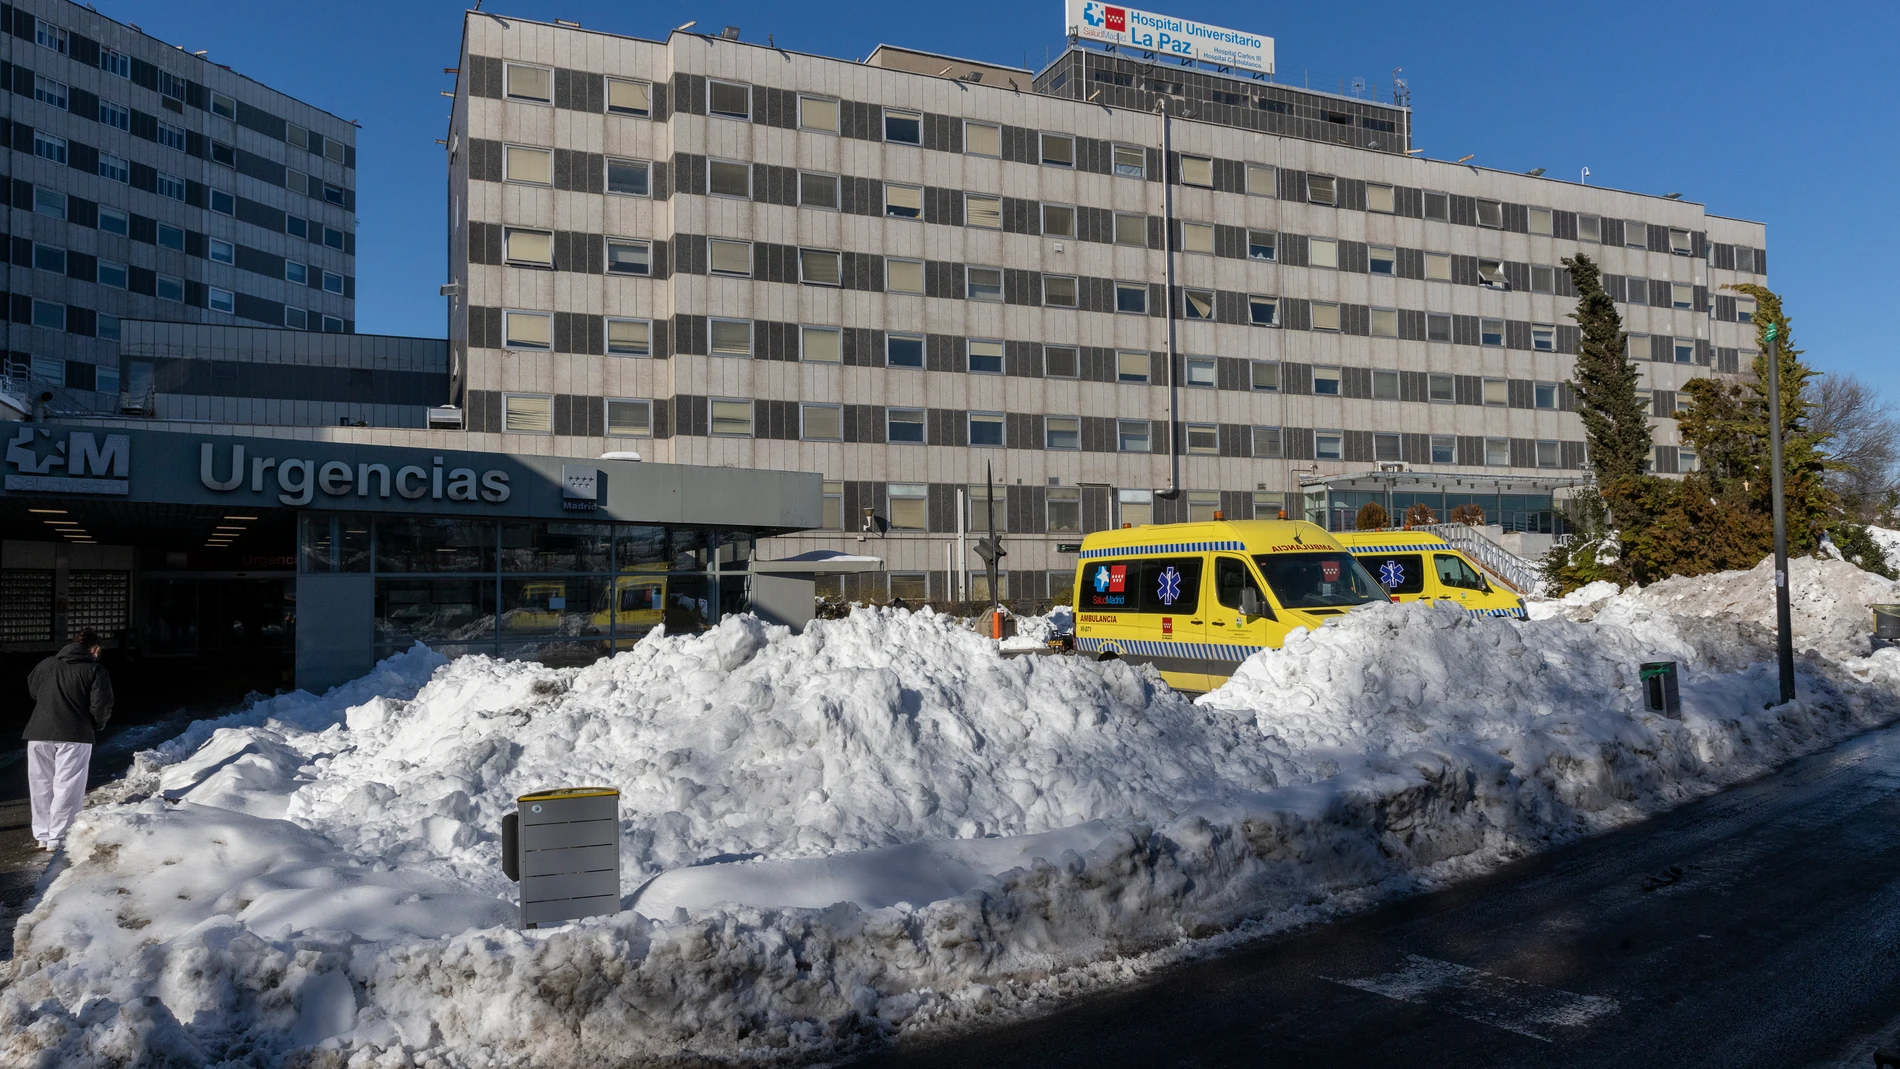 El temporal Filomena ha obligado a los hospitales a poner en marcha sus protocolos de emergencias